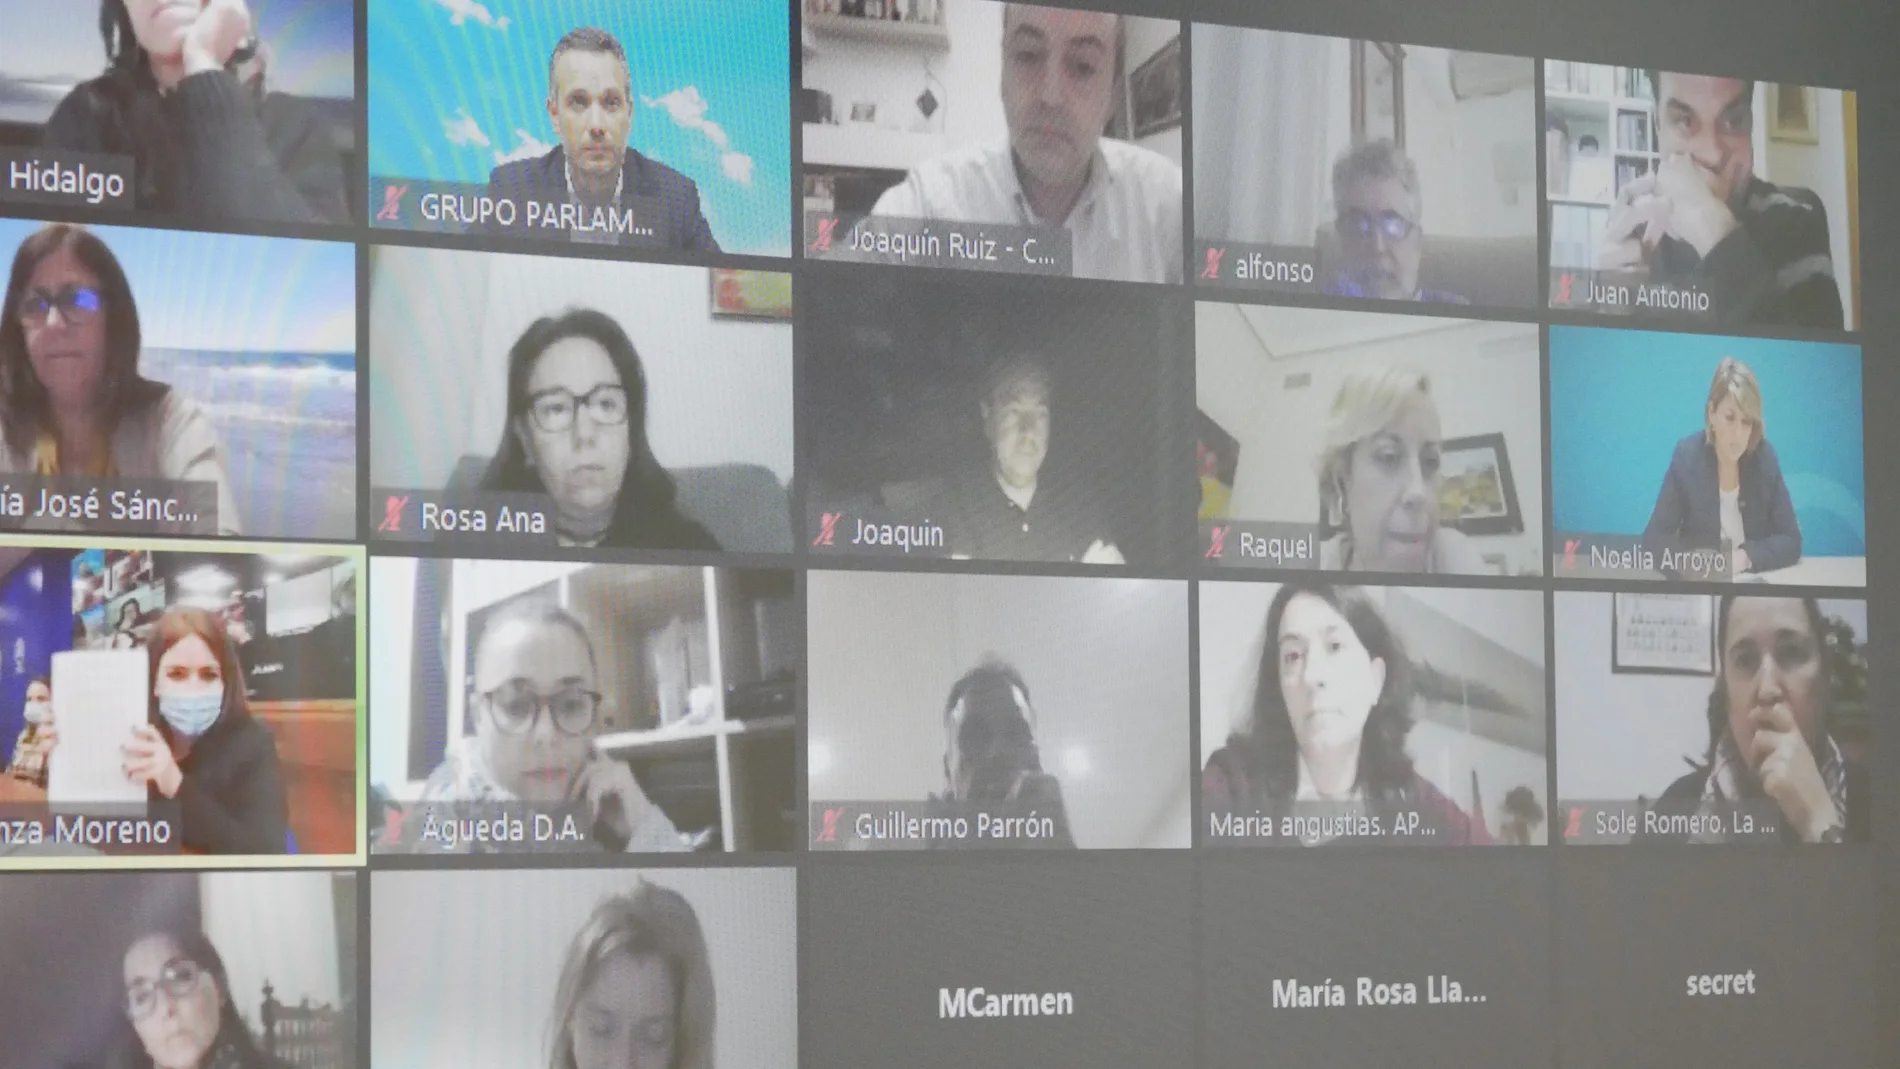 Imagen de los participantes en la videoconferencia de los representantes del PP con los de la enseñanza concertadaPP23/11/2020